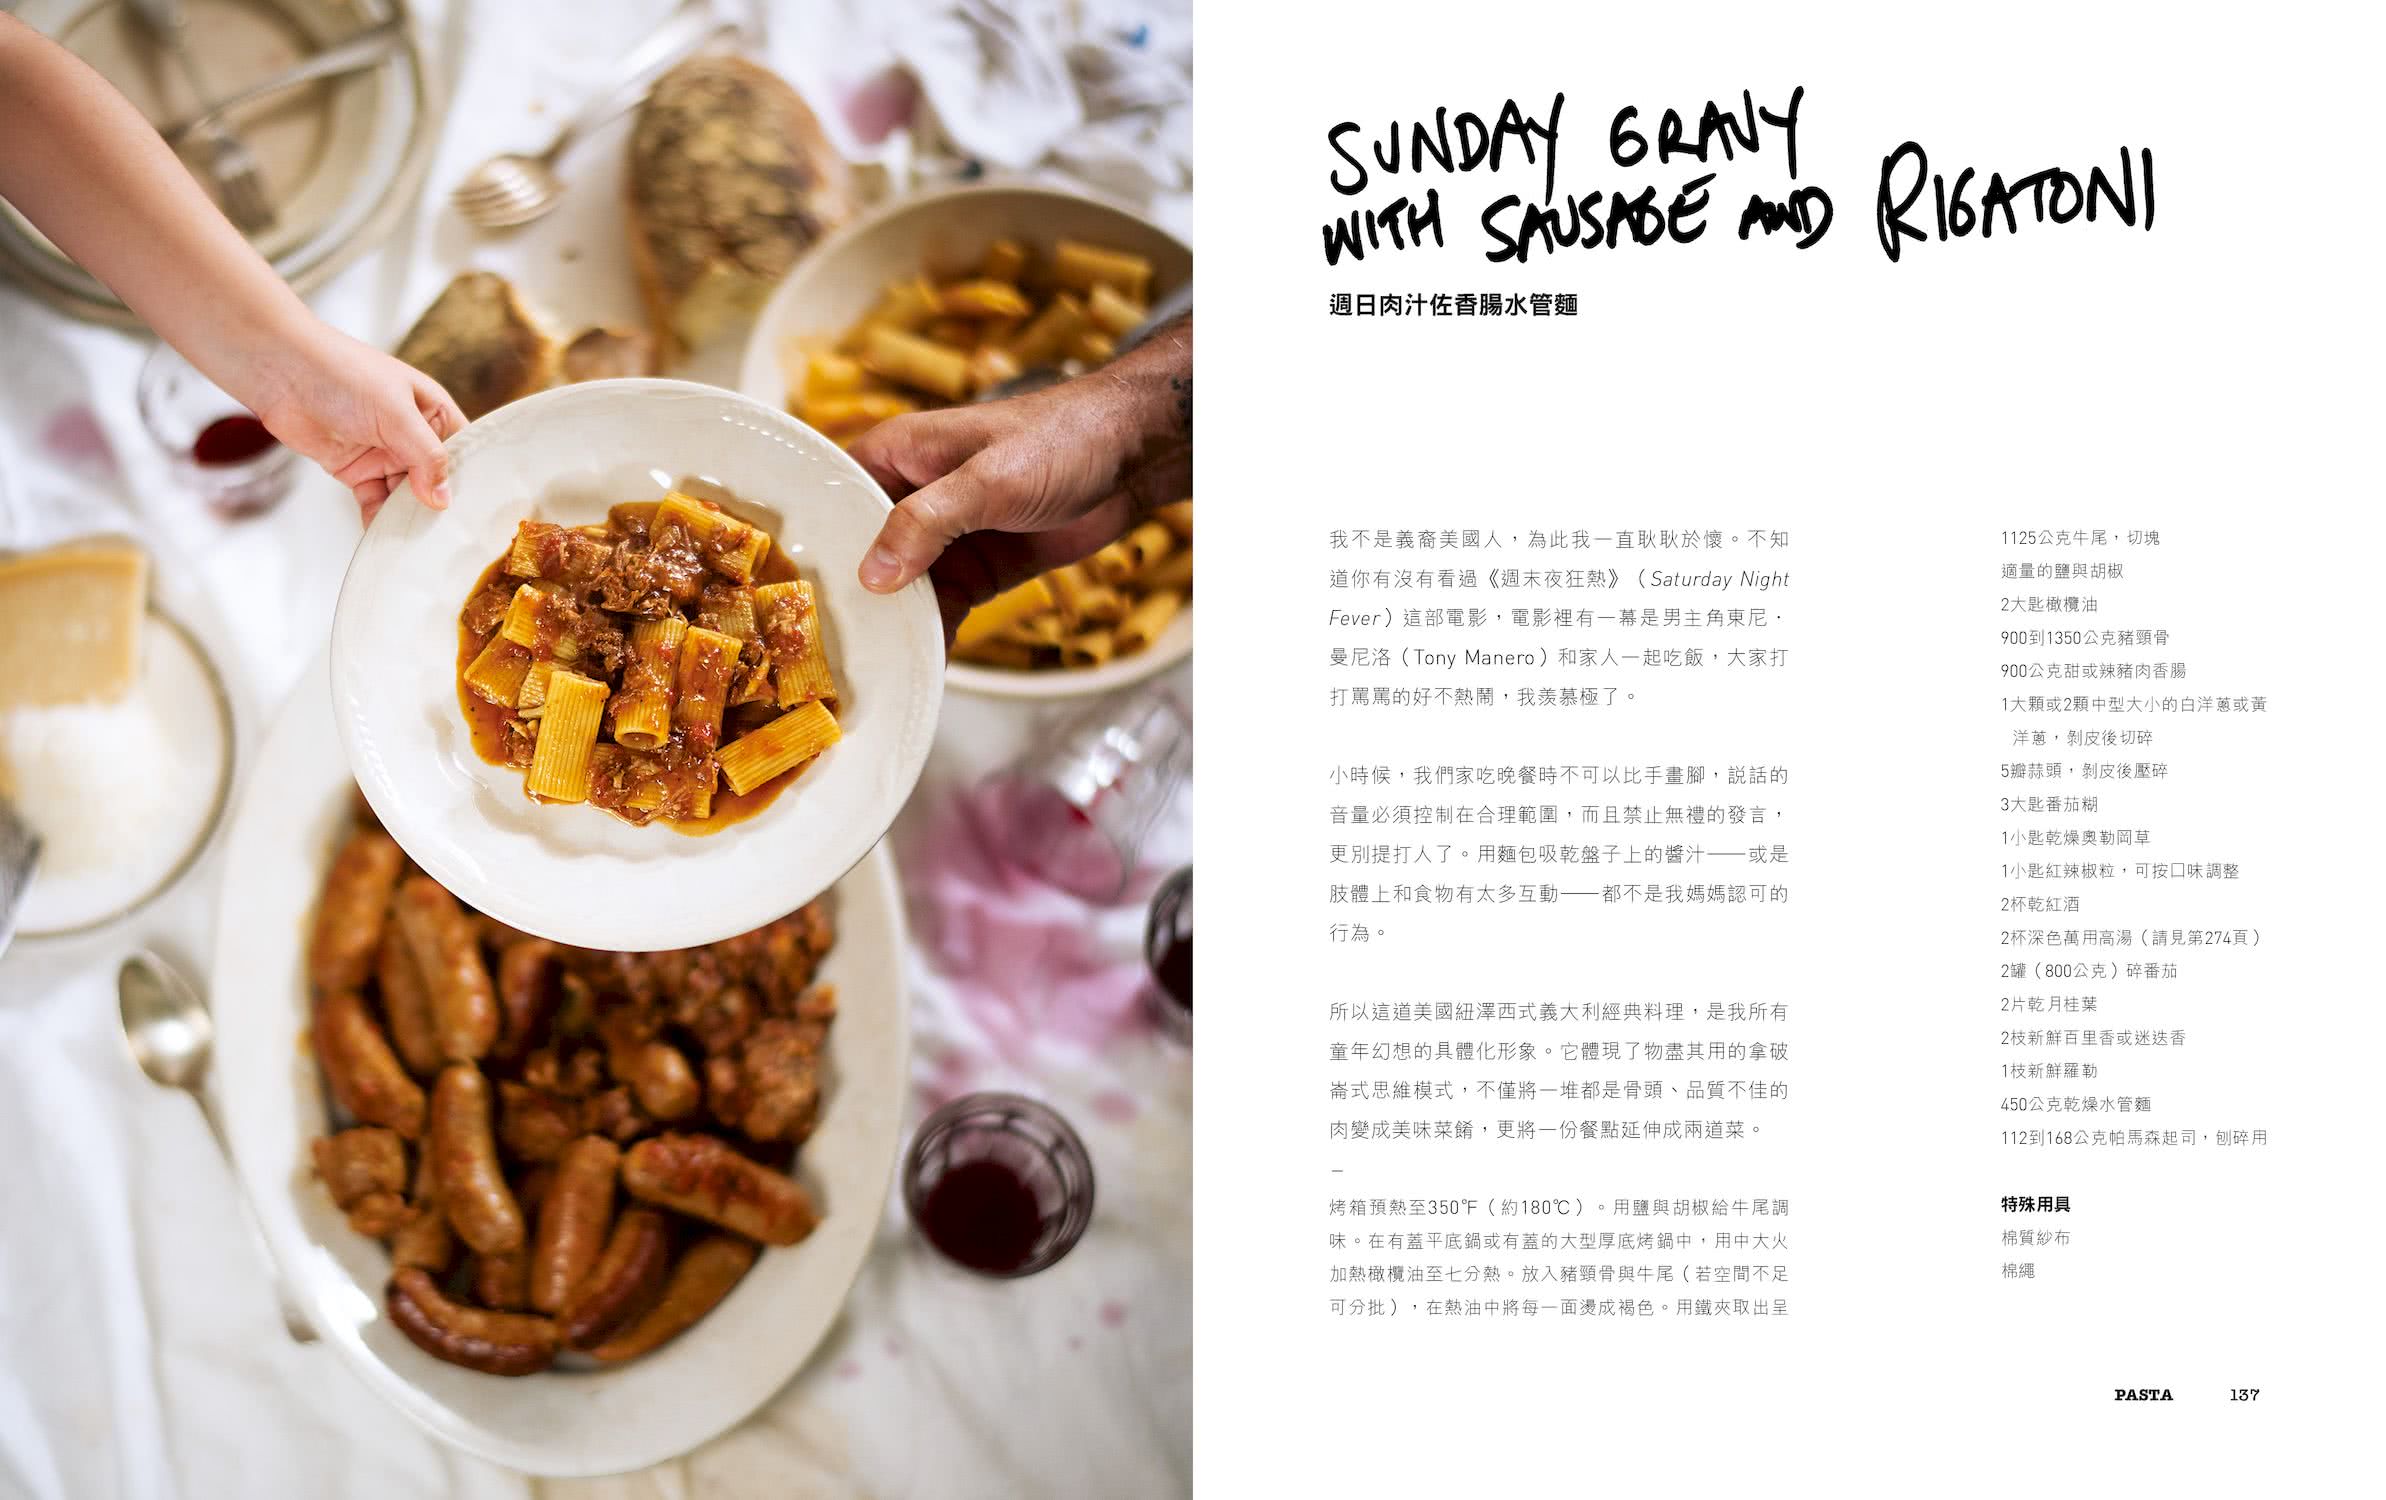 食指大動：安東尼．波登的精選家庭食譜 只與家人朋友分享的美味與回憶